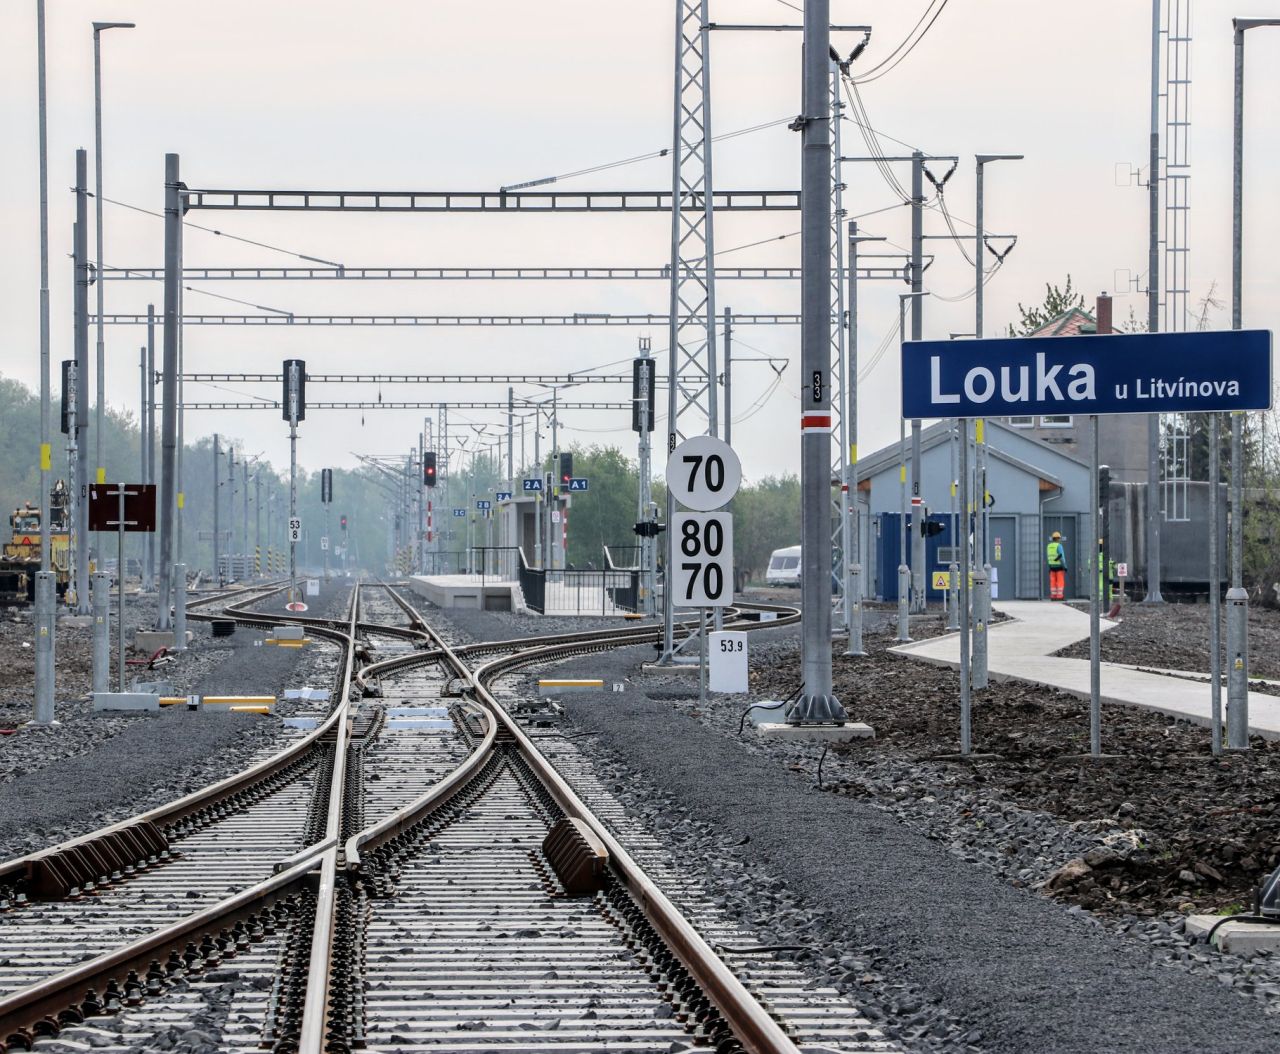 Stanice Louka u Litvínova. Foto: Správa železnic